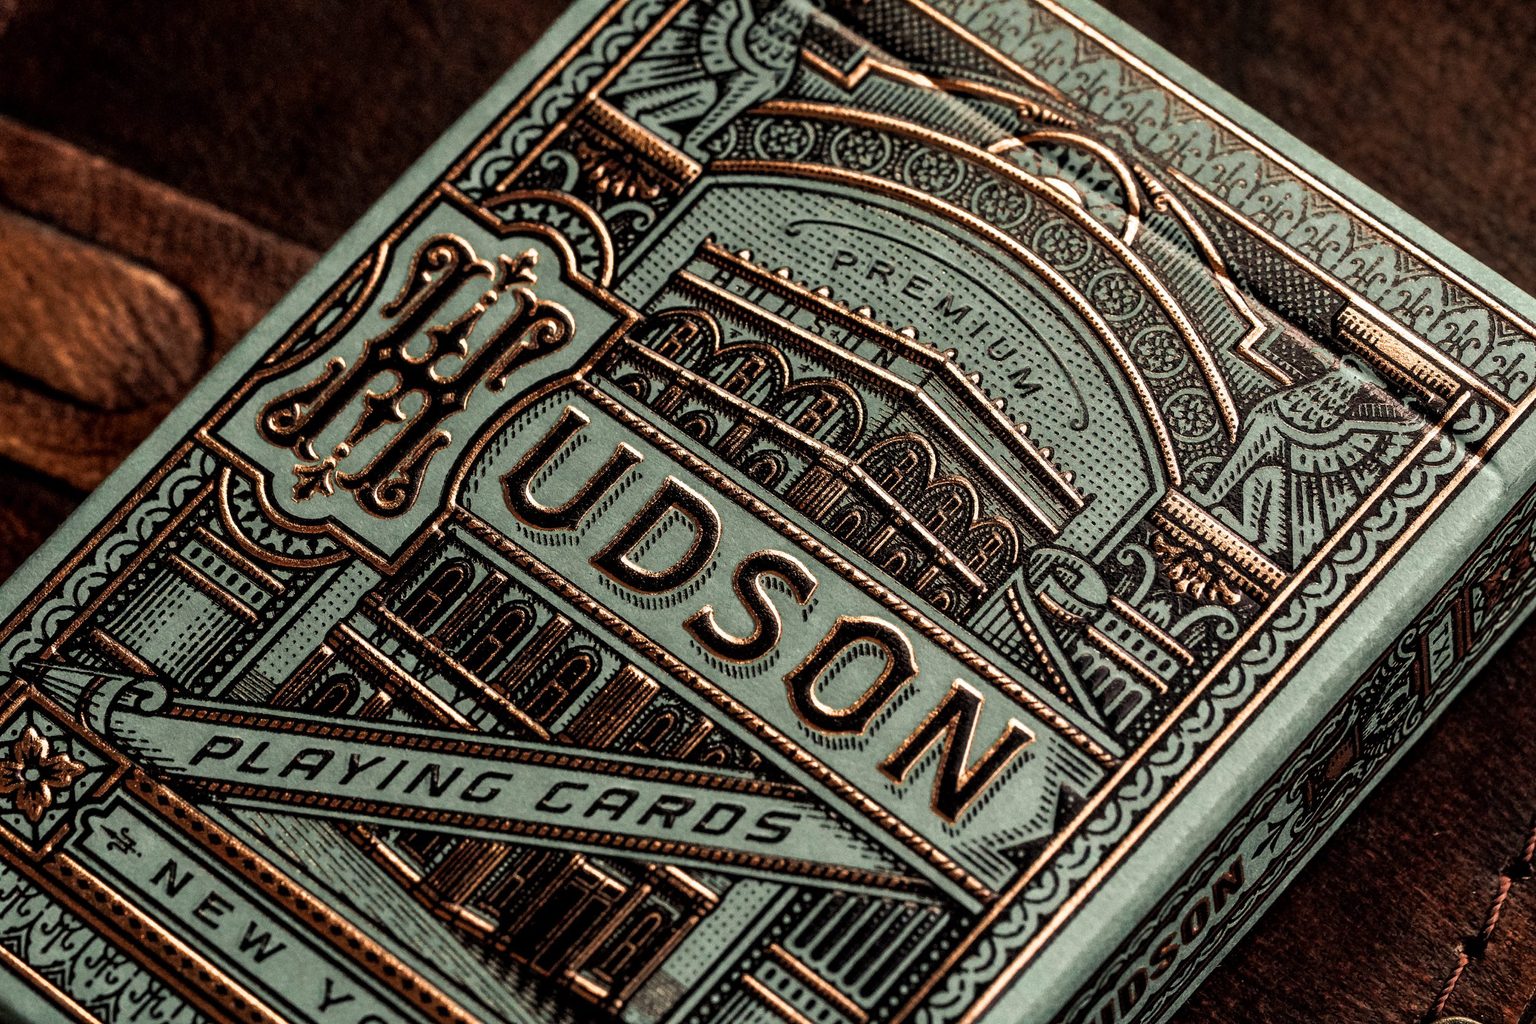 Hudson - talia kart do pokera